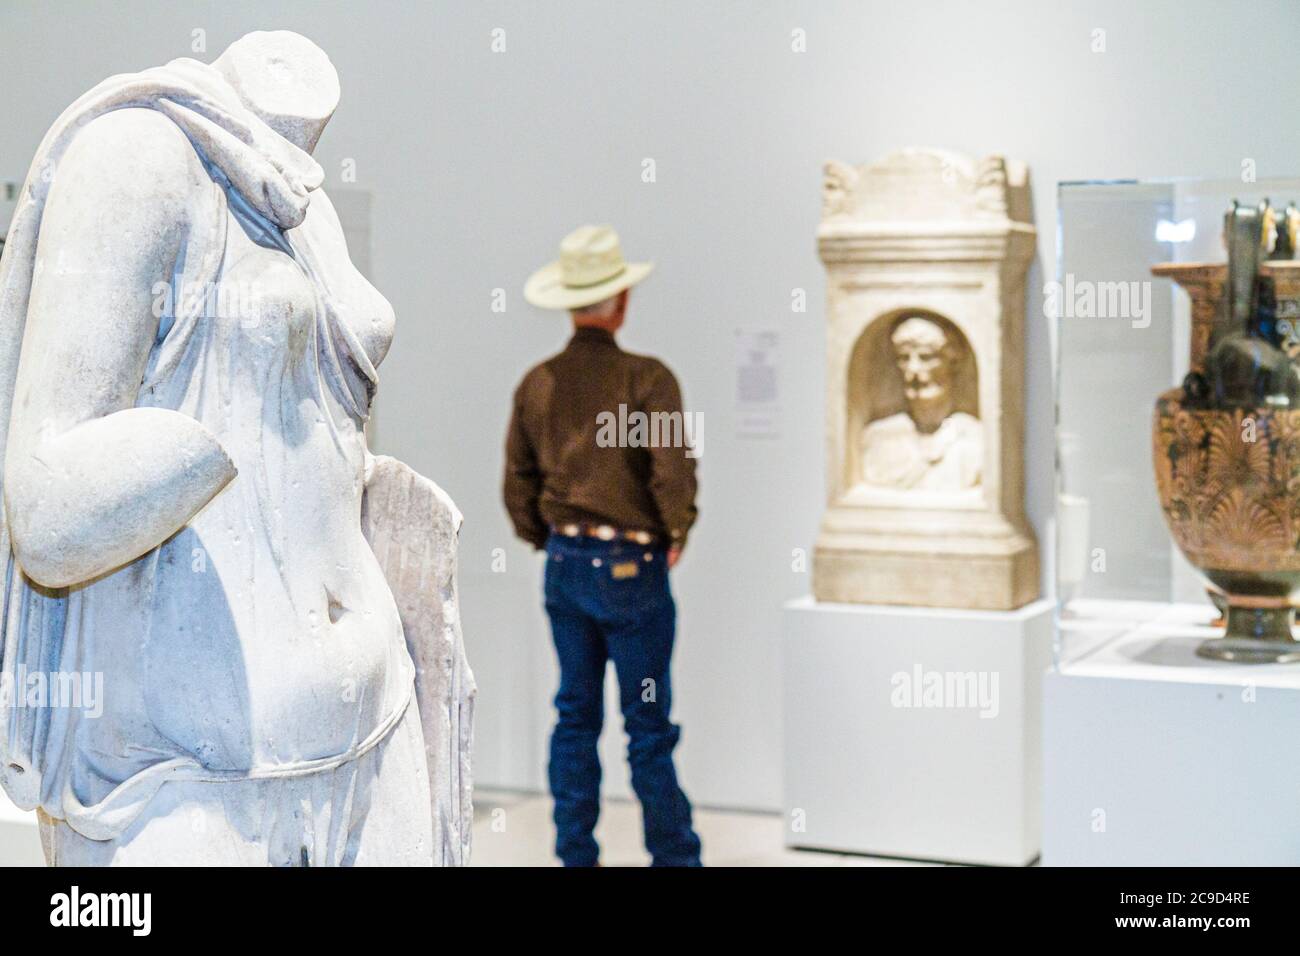 Tampa Floride, Tampa Musée d'art, sculpture grecque classique, cowboy, les visiteurs voyage visite touristique touristique site touristique sites culturels, culture, Banque D'Images